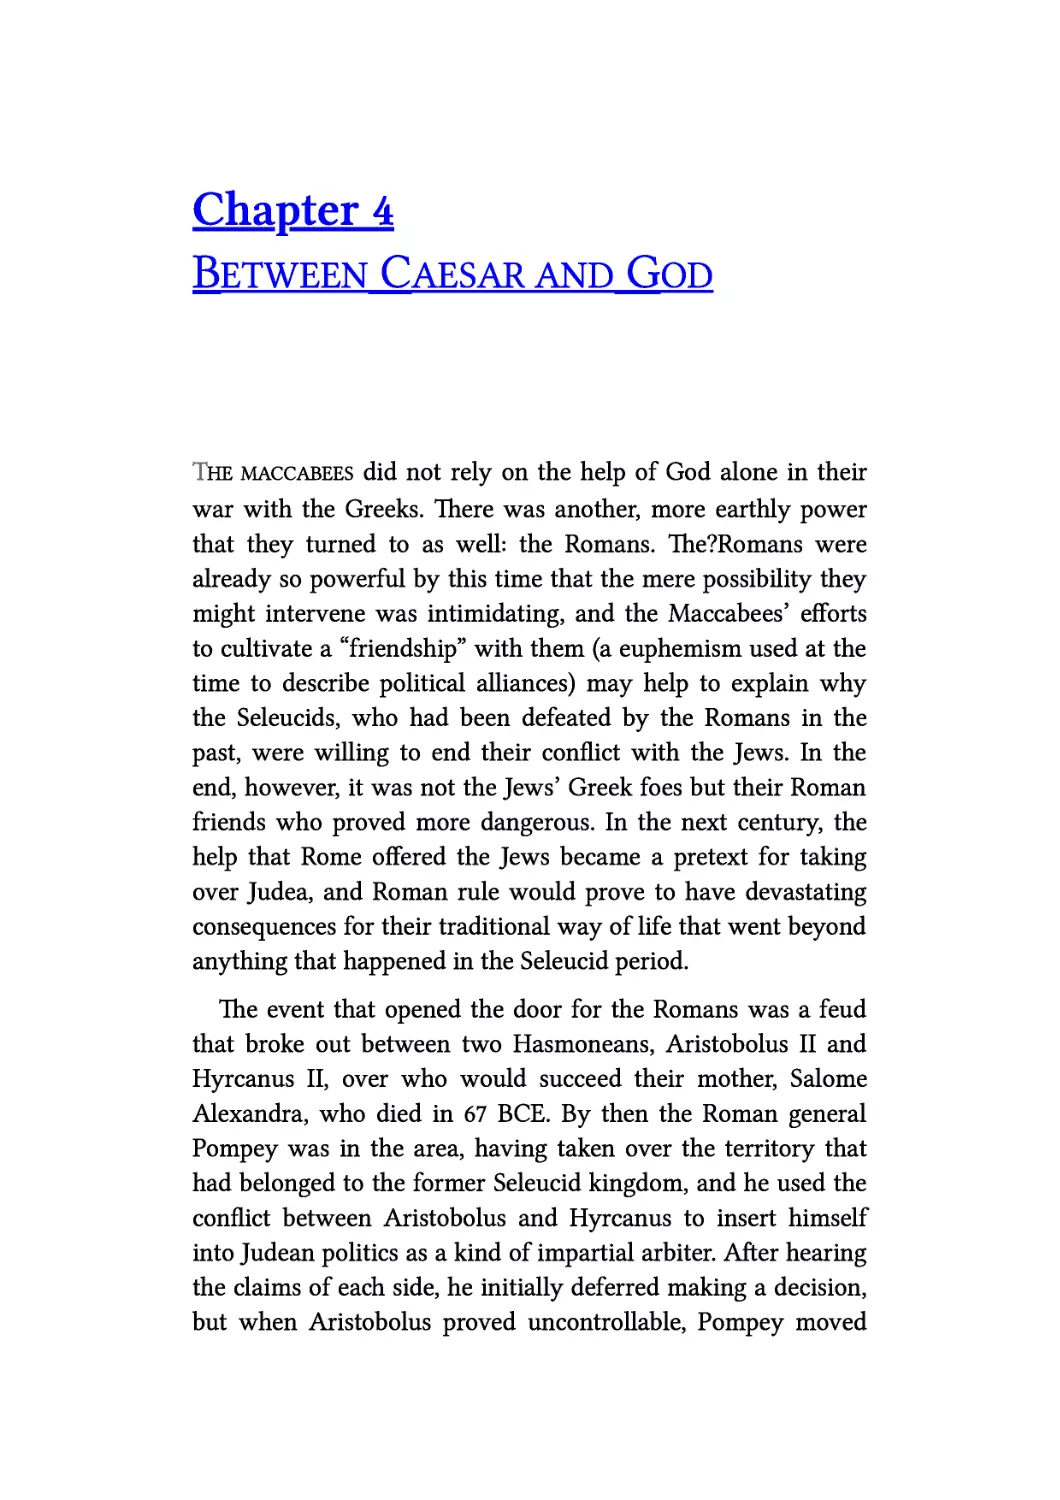 4. Between Caesar and God